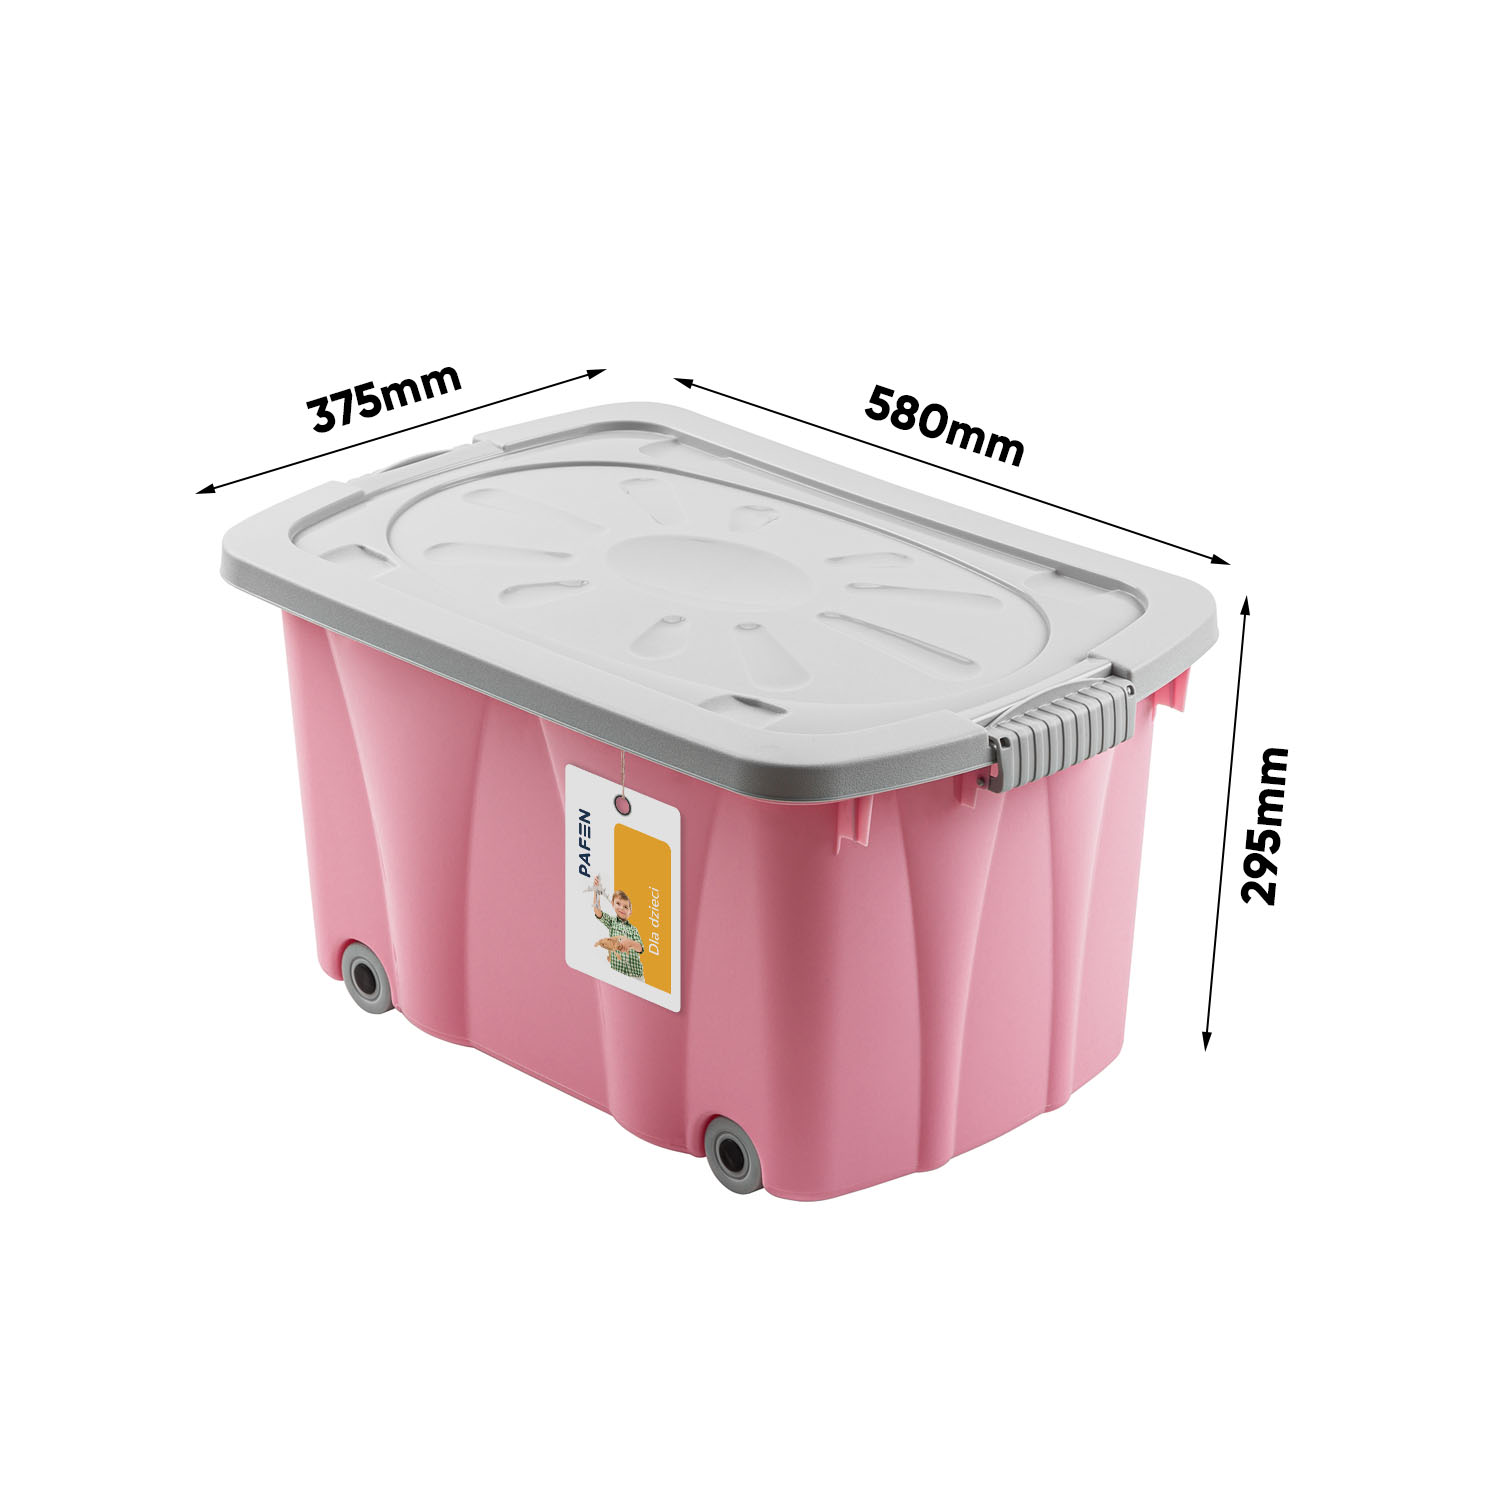 Wymiary Kliper M toy box Pink (1)